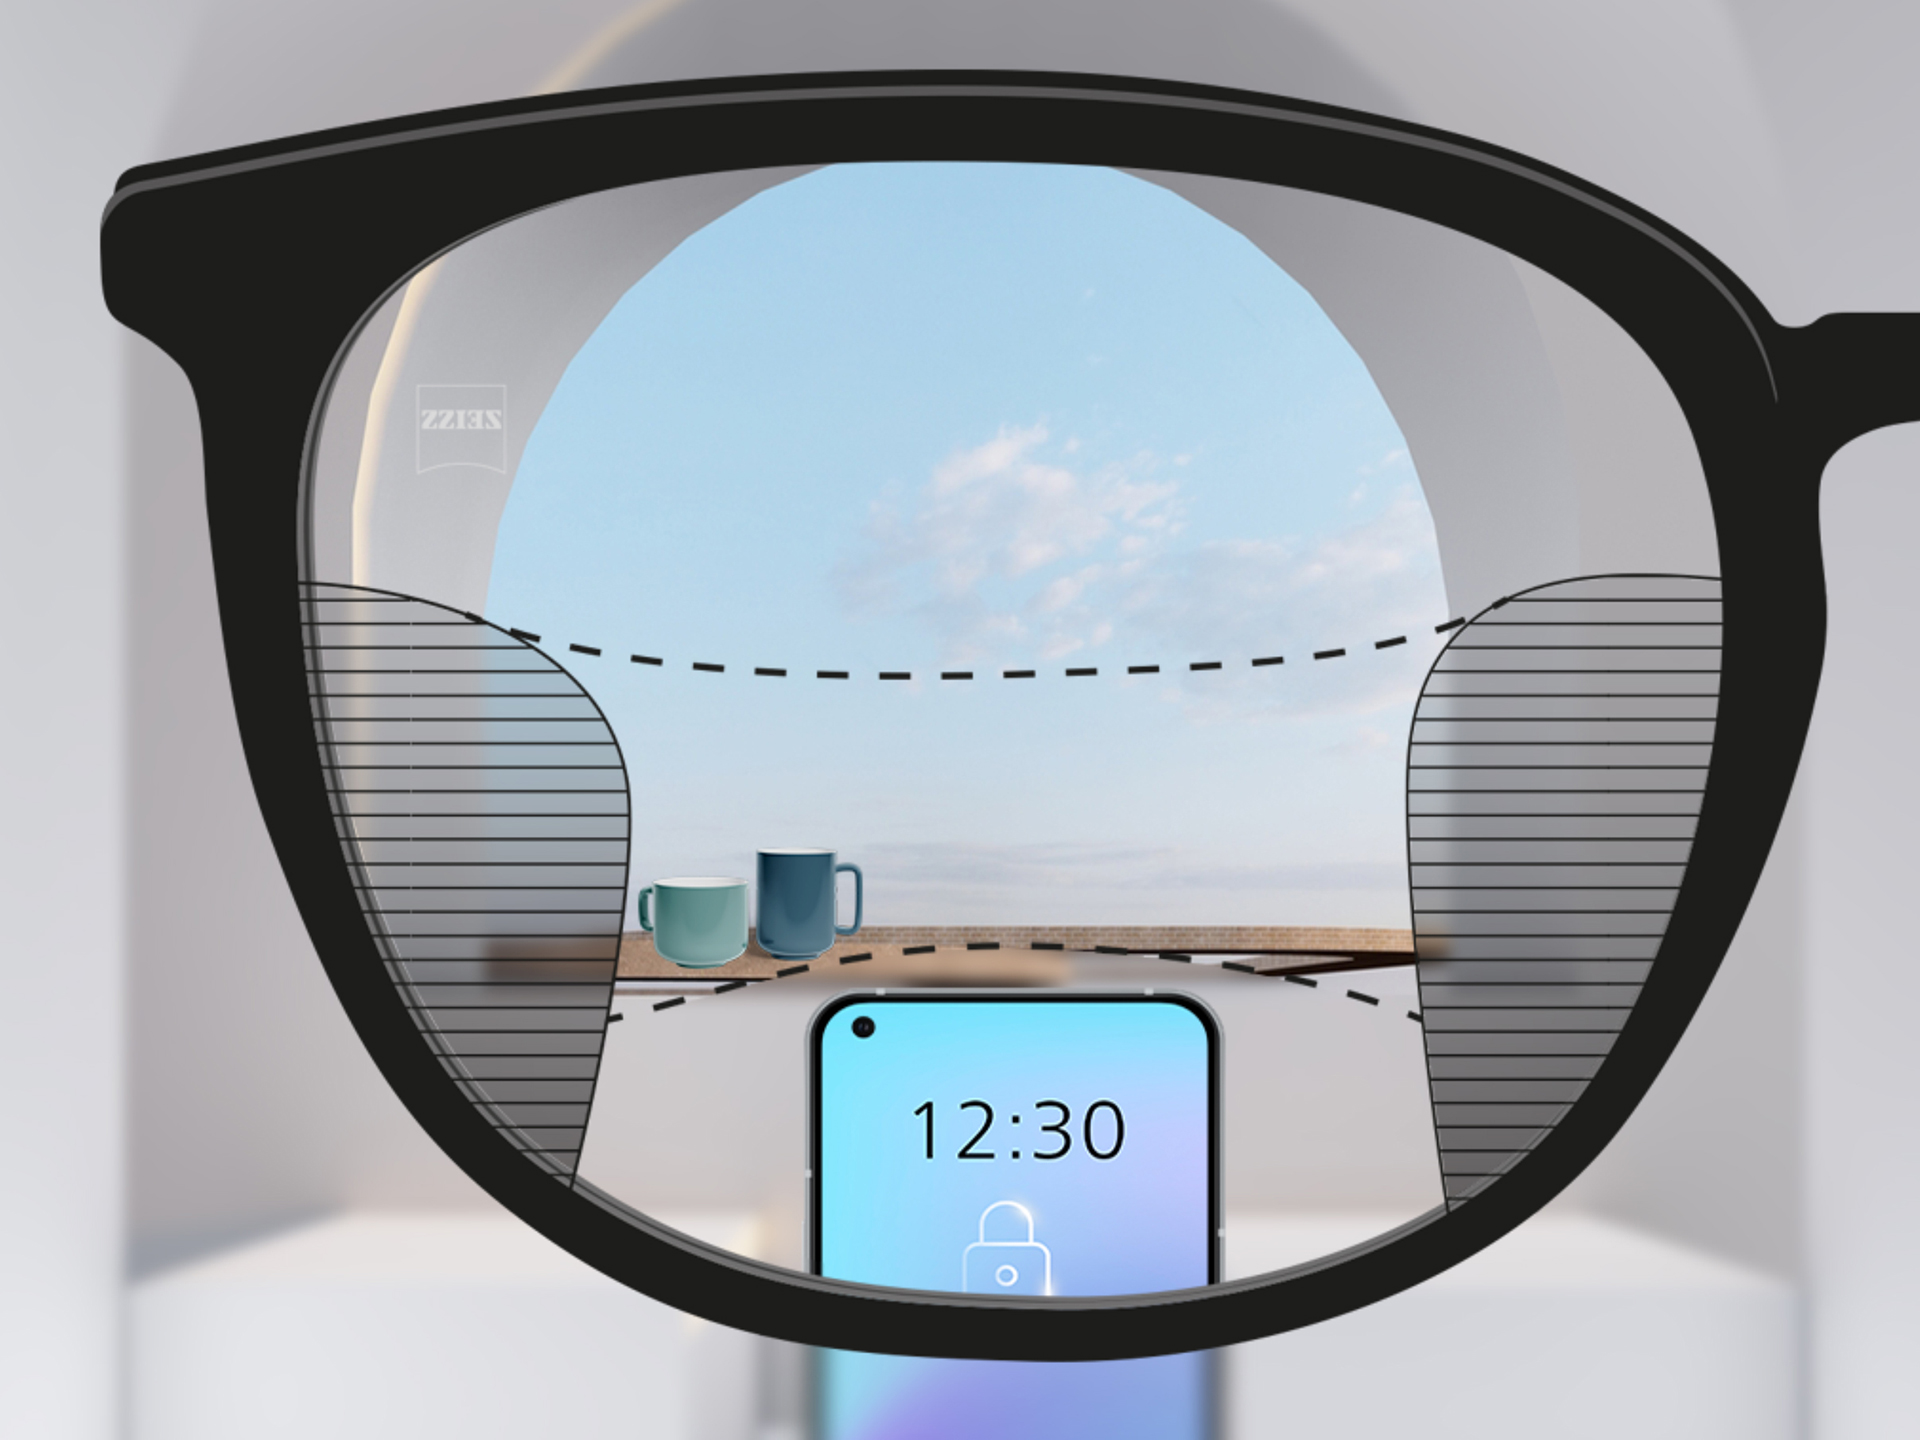 Imagem através da lente ZEISS SmartLife Progressiva: as zonas desfocadas à esquerda e à direita são pequenas e possibilitam um maior campo de visão nítida.